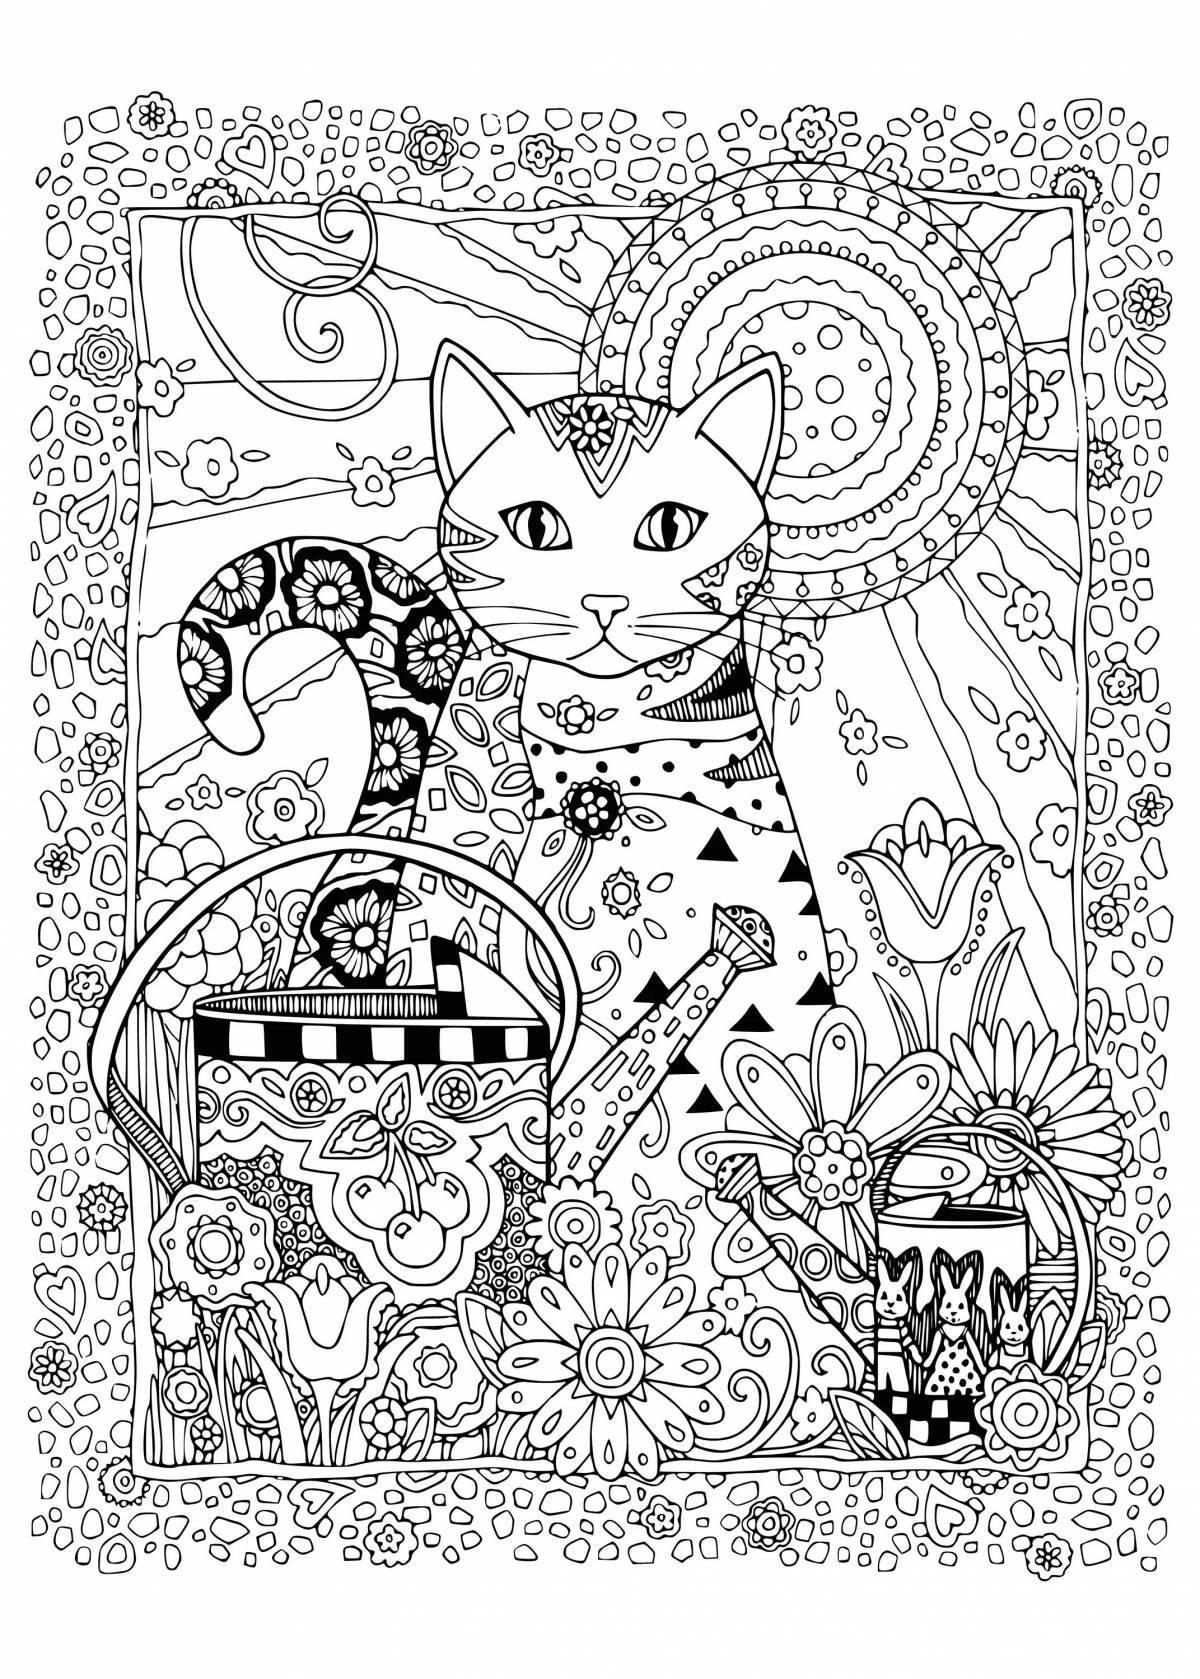 Adorable complex cats coloring book